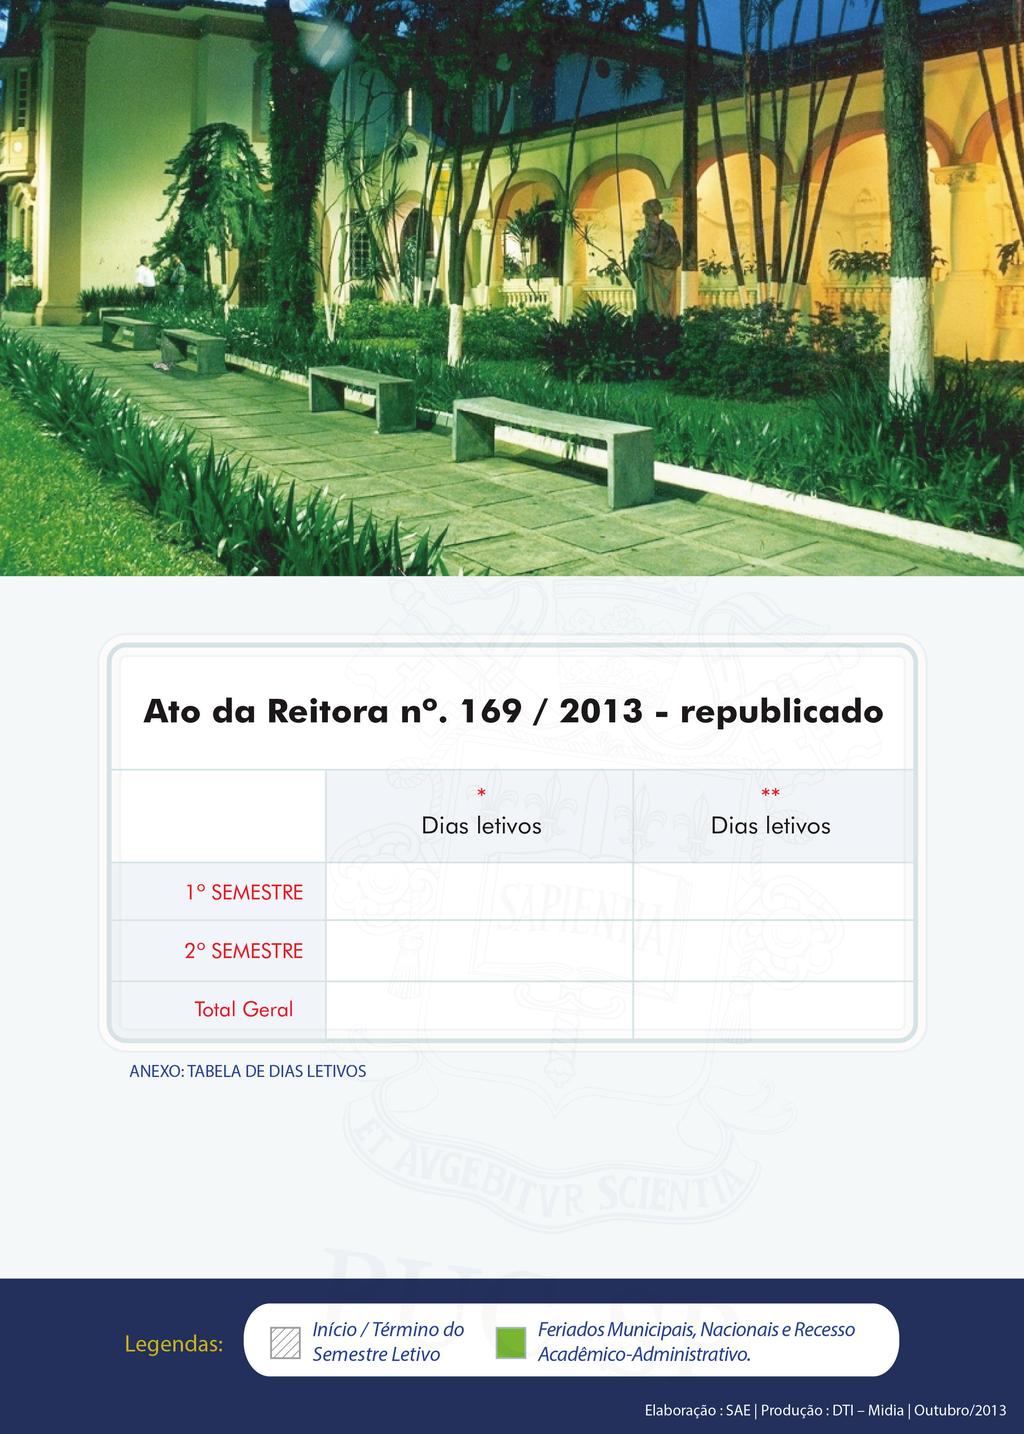 108 e 107 12 109 11 2/216 26 * Campus: 1 semestre :Monte Alegre, Marquês de Paranaguá, Ipiranga e Santana (108)